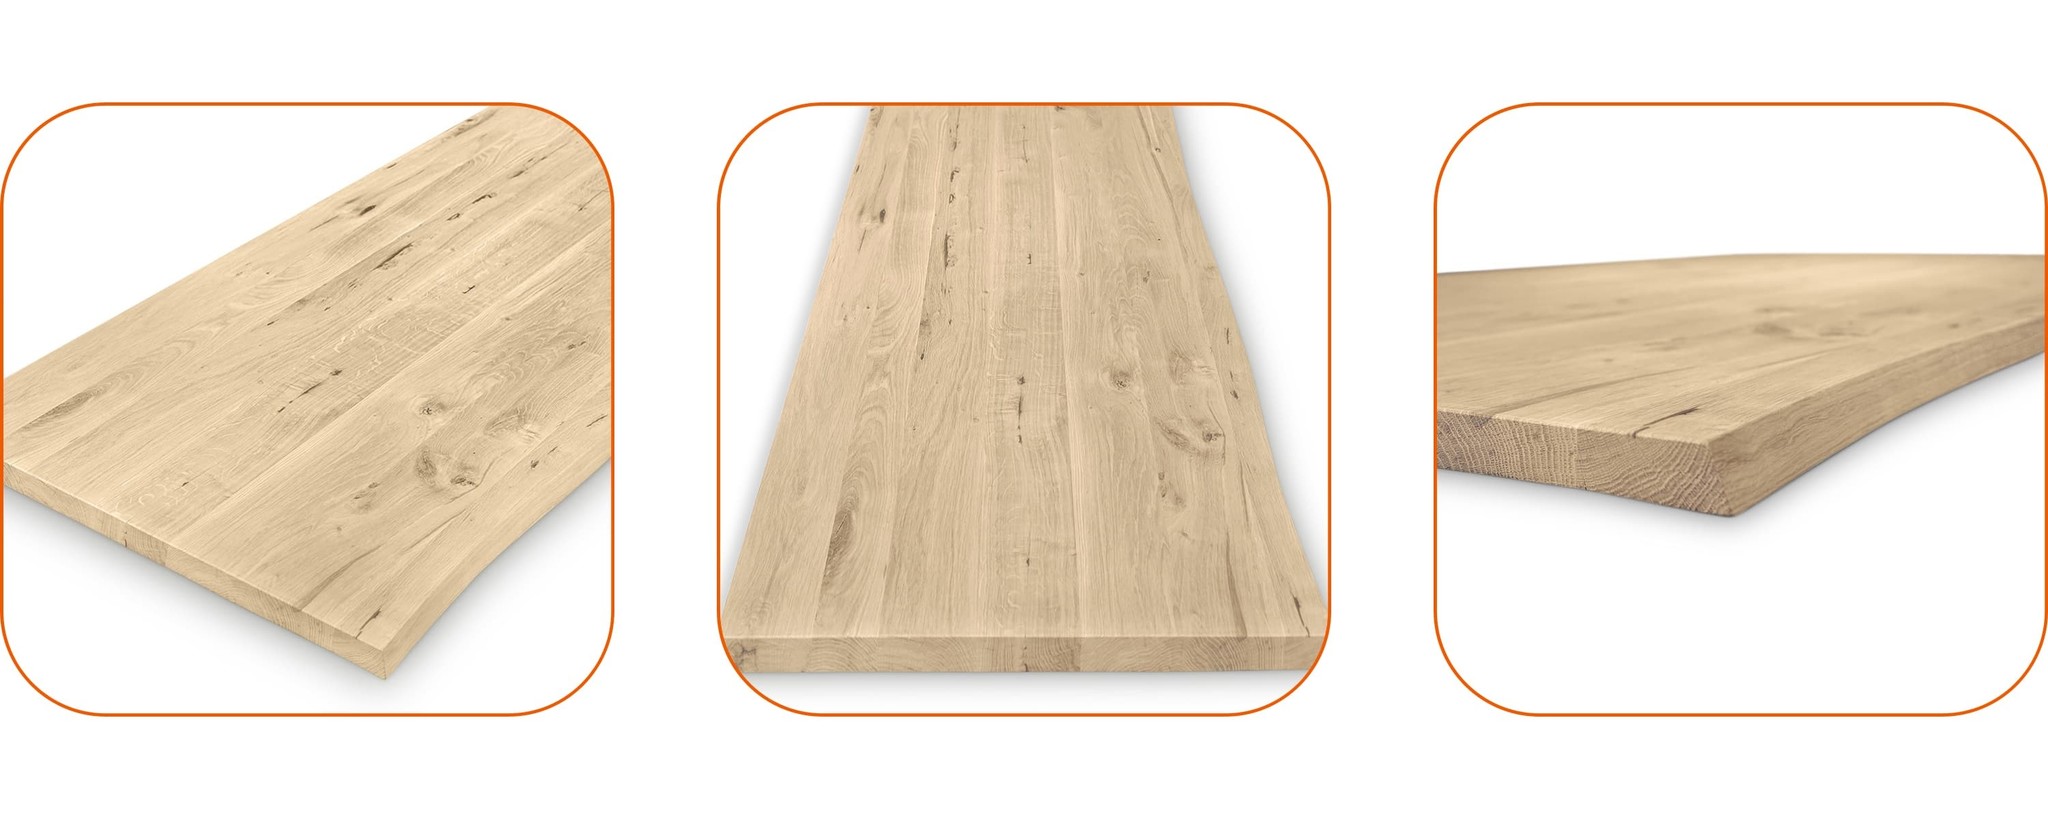 Leimholz Eiche - Massivholzplatte nach Maß - Eichenholz A-Qualität (A/B) -  4 cm stark - durchgehenden Lamellen - für innen